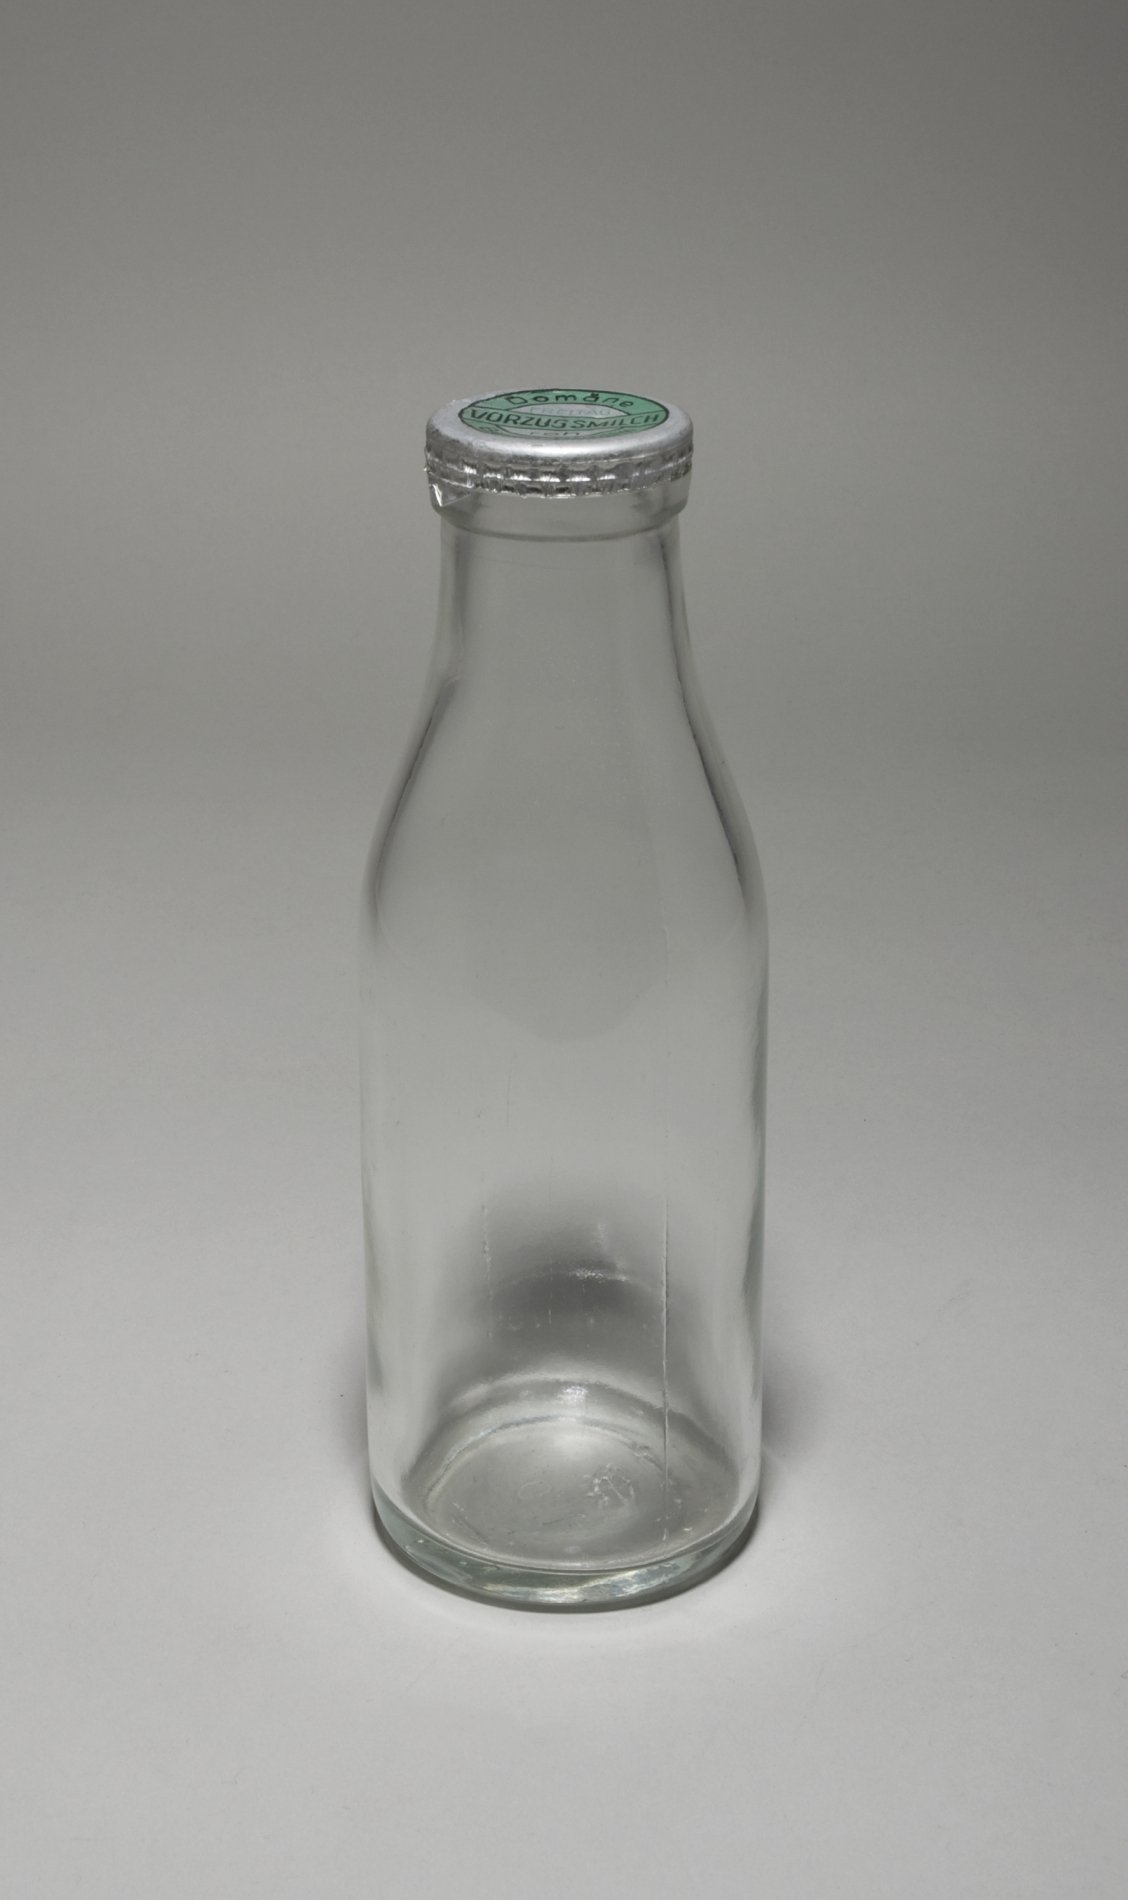 Milchflasche "Vorzugsmilch Domäne Dahlem" (Stiftung Domäne Dahlem - Landgut und Museum, Weiternutzung nur mit Genehmigung des Museums CC BY-NC-SA)